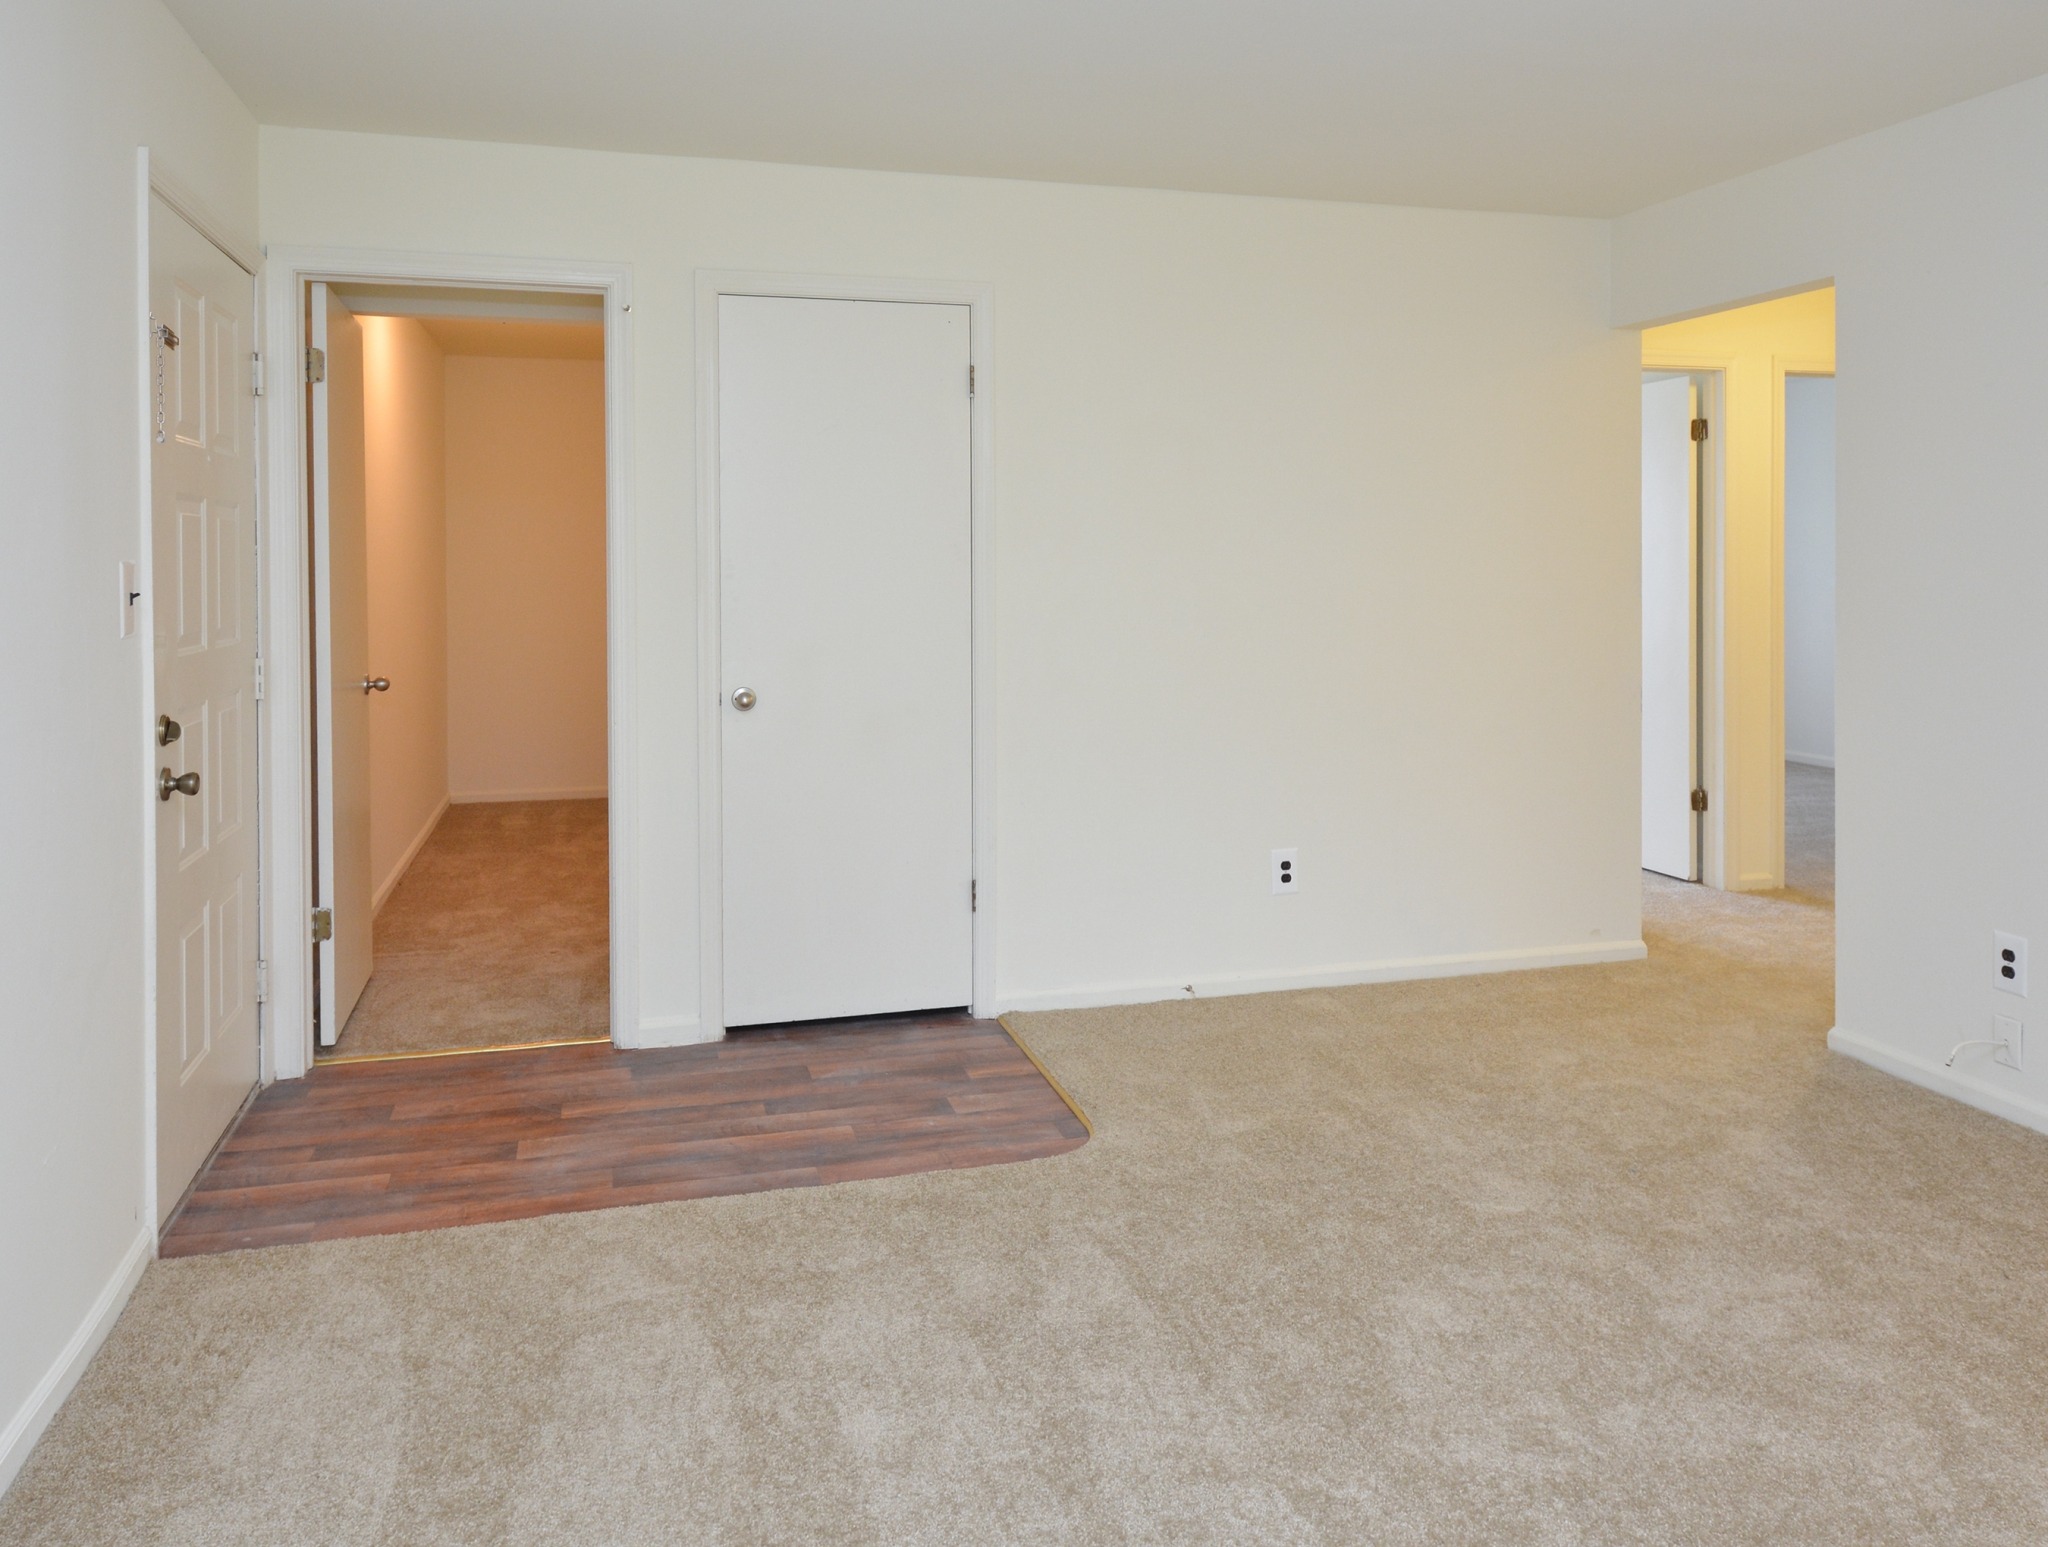 Willow Ridge carpeted living room with hallway door.